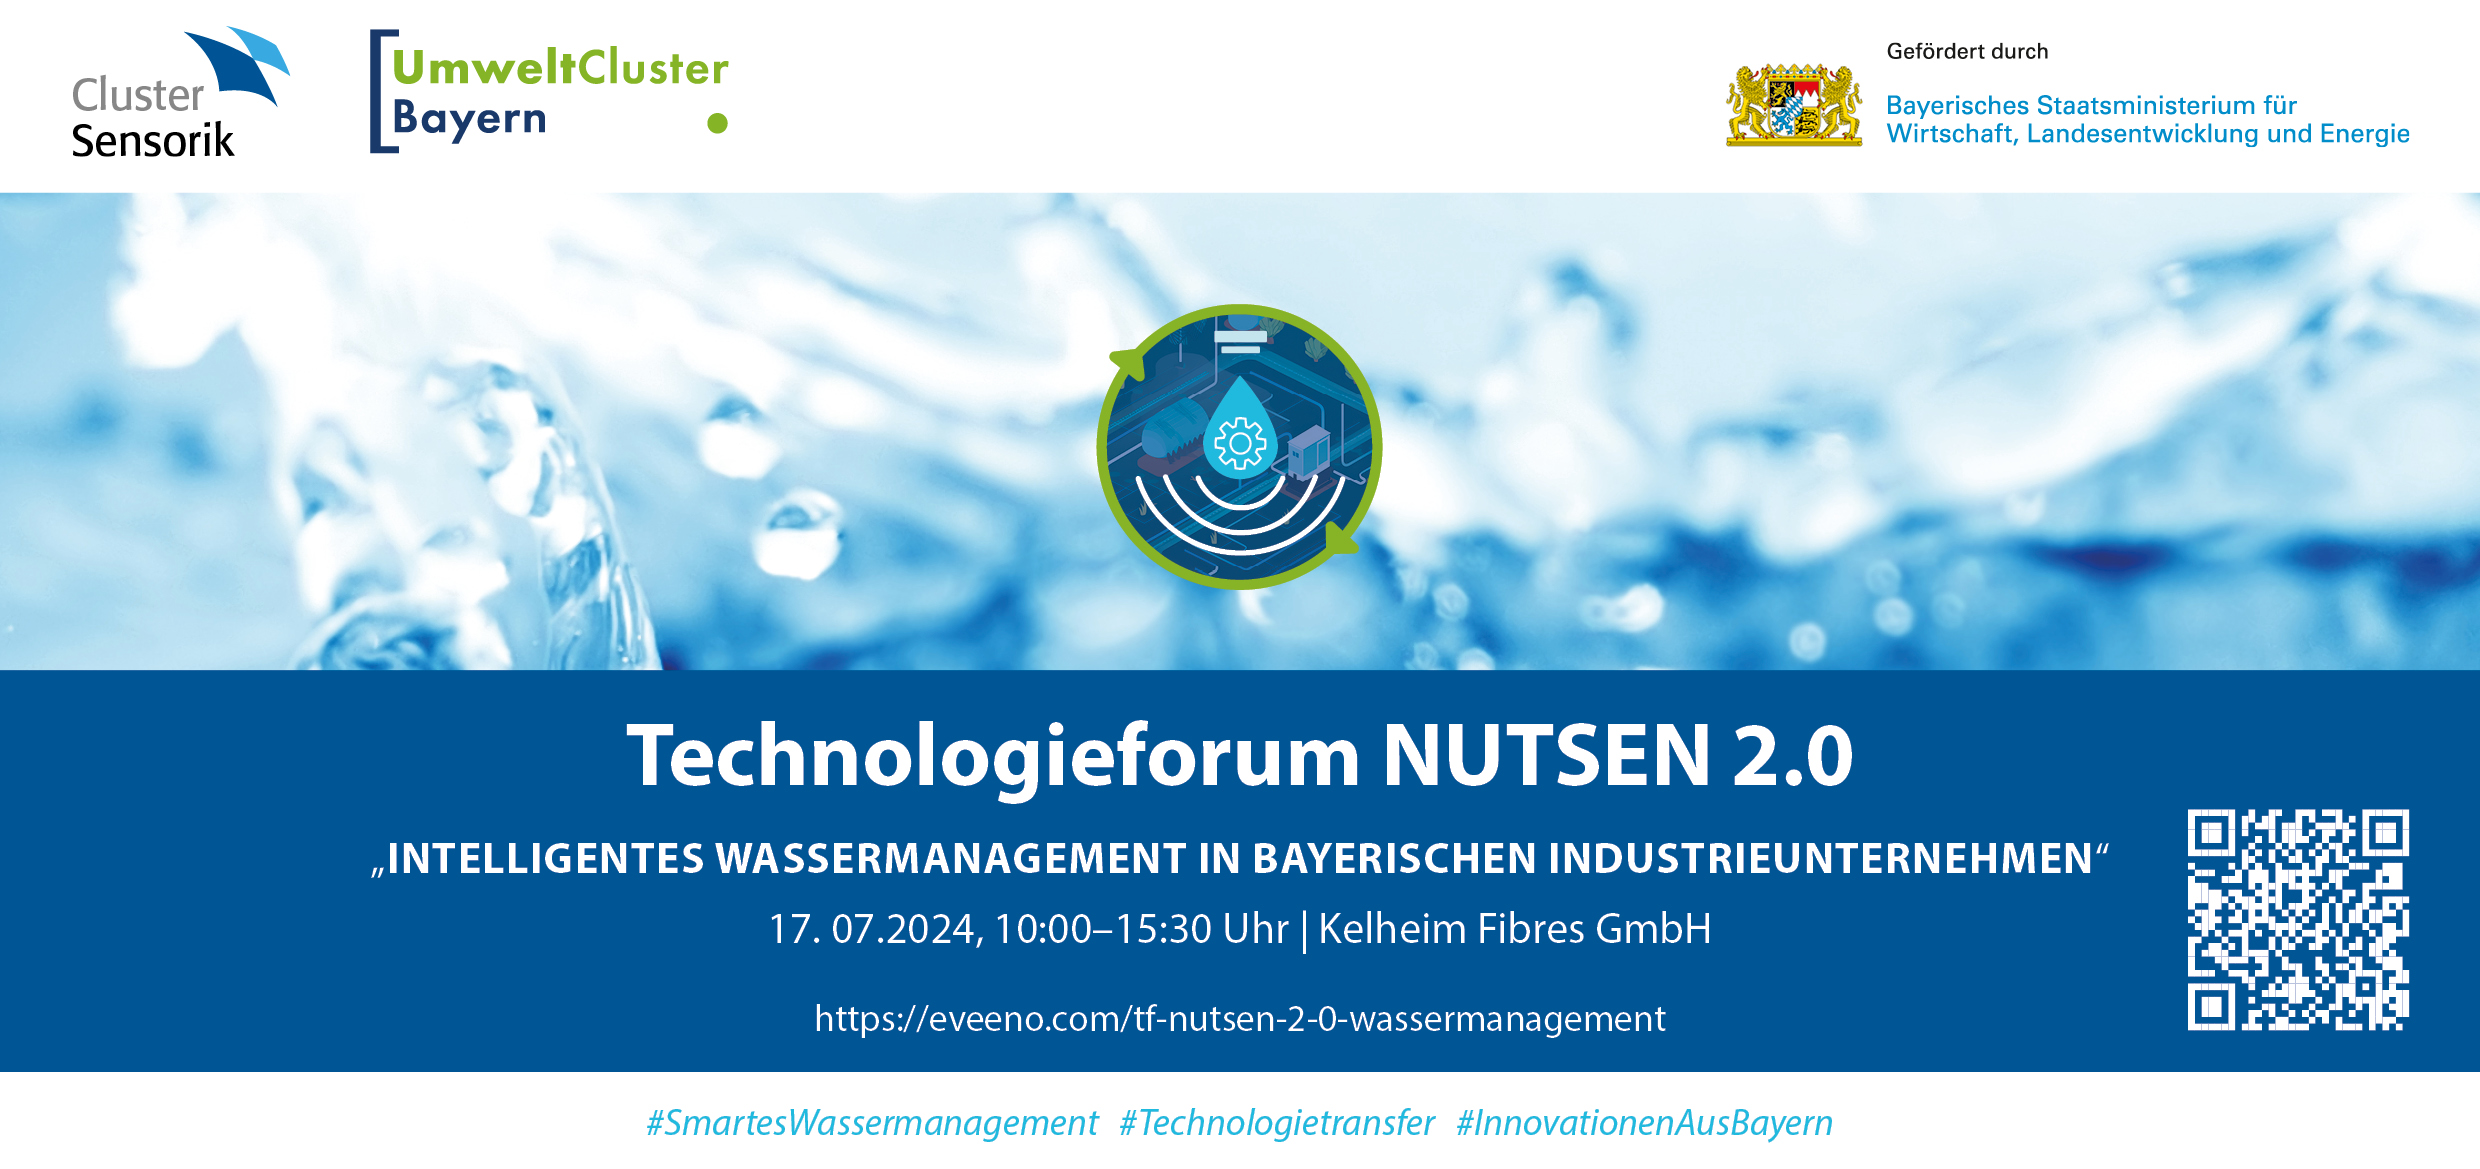 Technologieforum NUTSEN 2.0 - Intelligentes Wassermanagement in bayerischen Industrieunternehmen